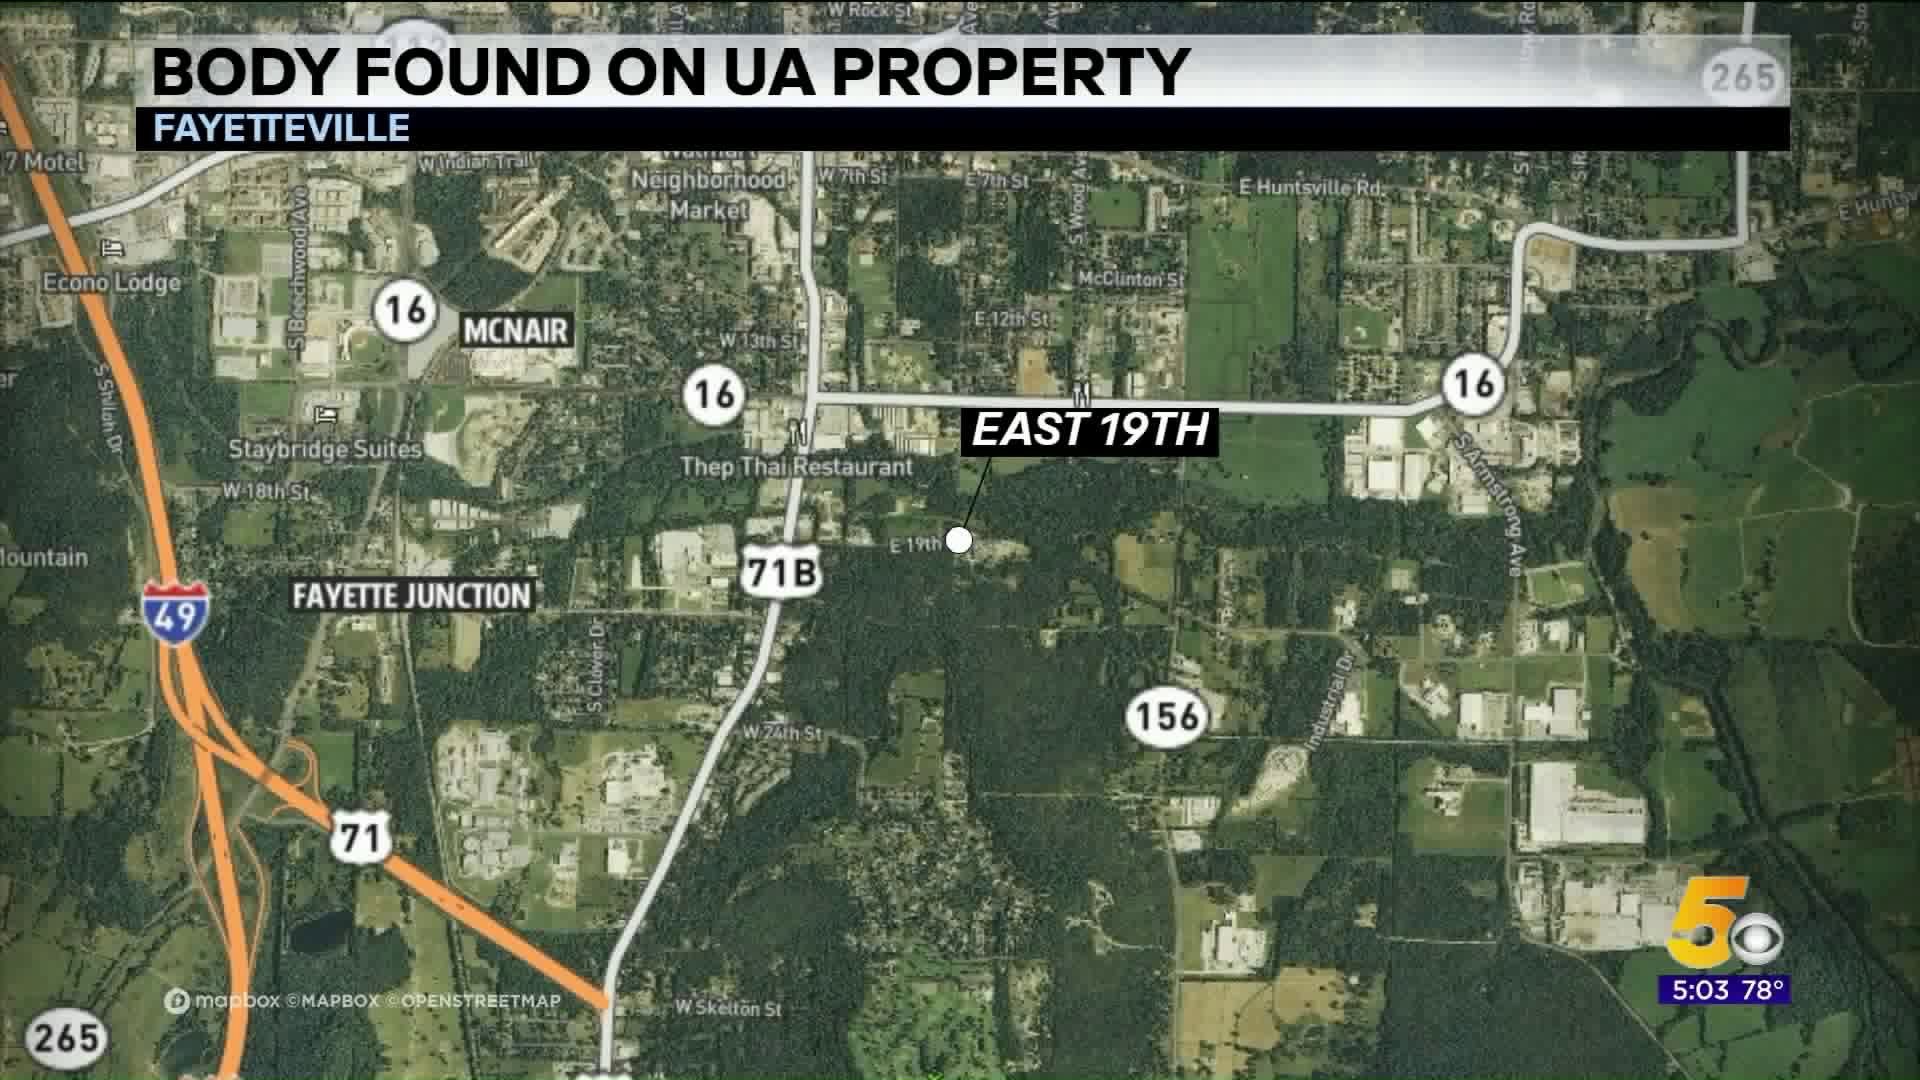 Body found on UA property